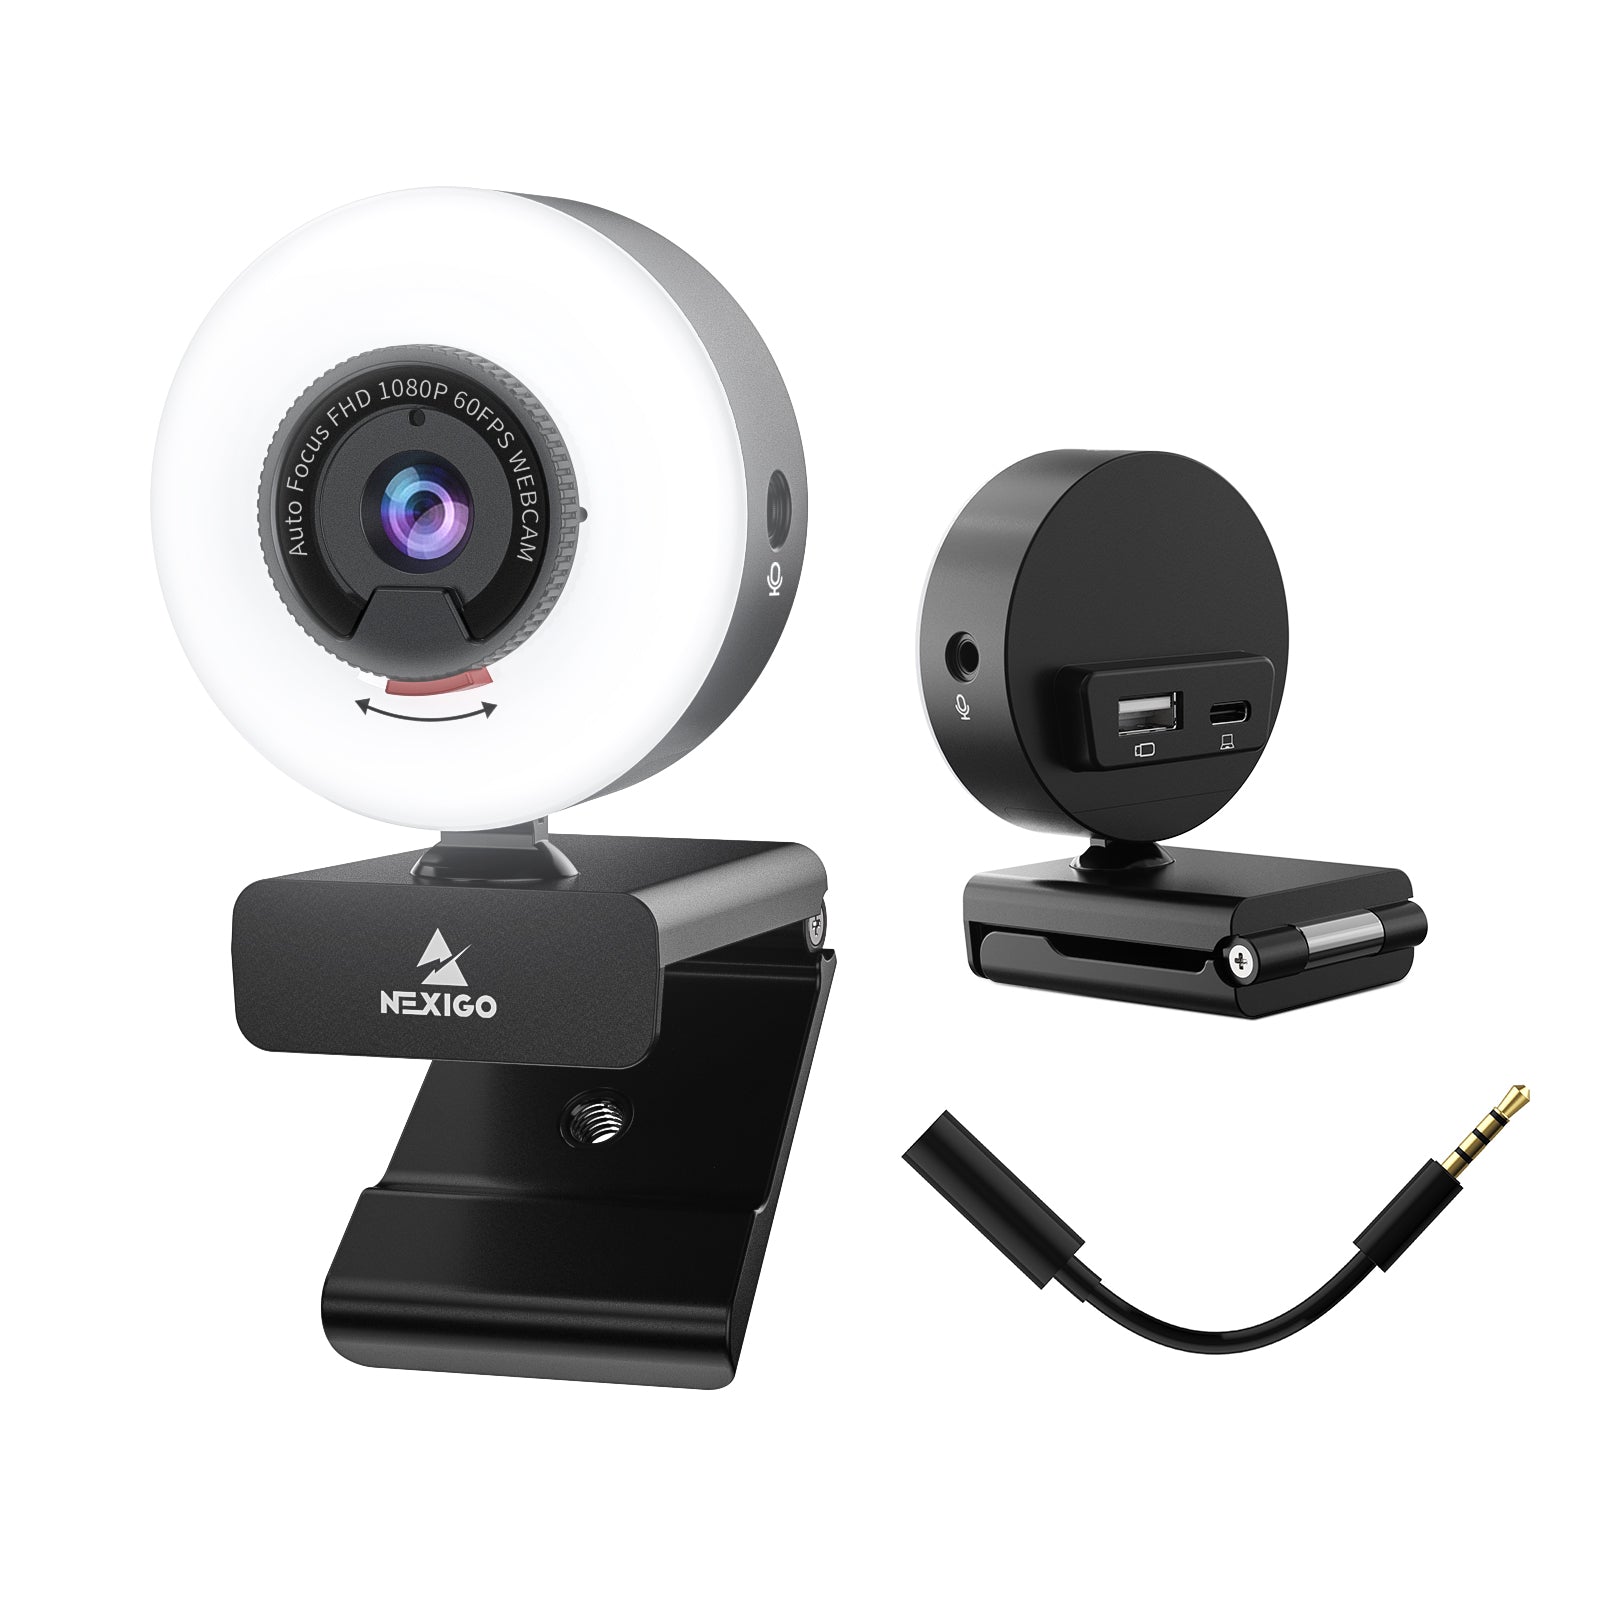 NexiGo N960E Pro 60fps Webcam with Additional Interface consumerelectronics - NexiGo